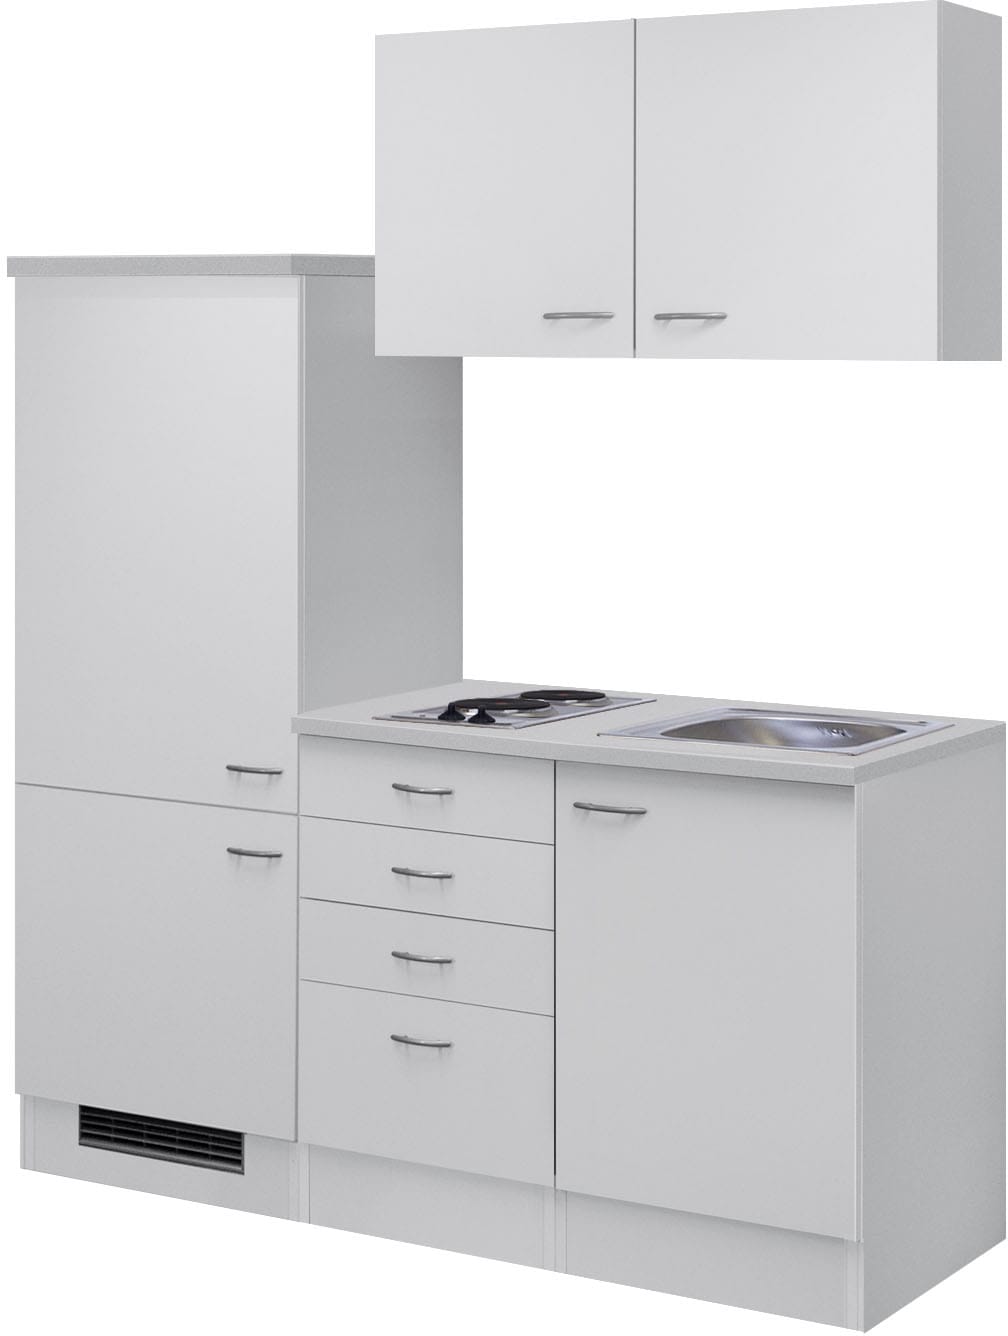 Flex-Well Küche "Wito", Gesamtbreite 160 cm, mit Einbau-Kühlschrank, Kochfeld und Spüle etc.